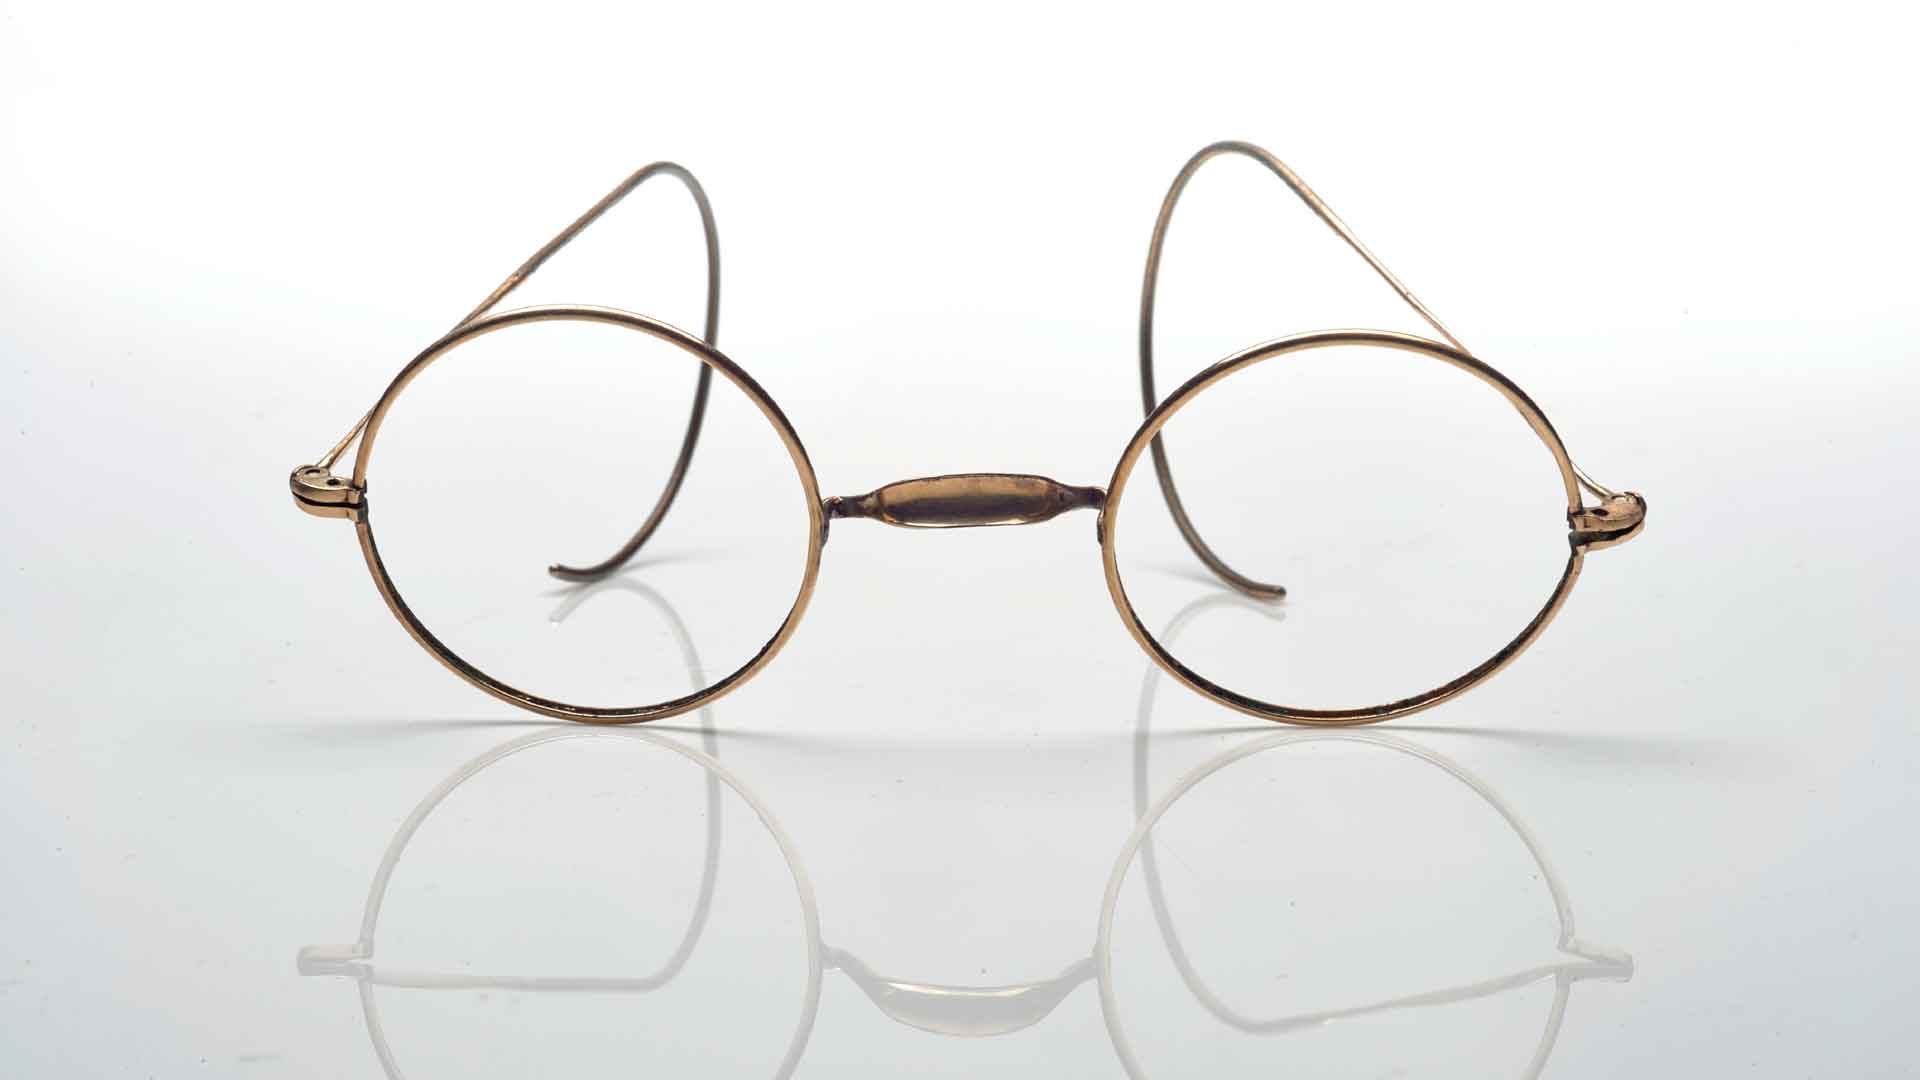 Las gafas de Monet, vendidas por más de 50.000 dólares en Hong Kong